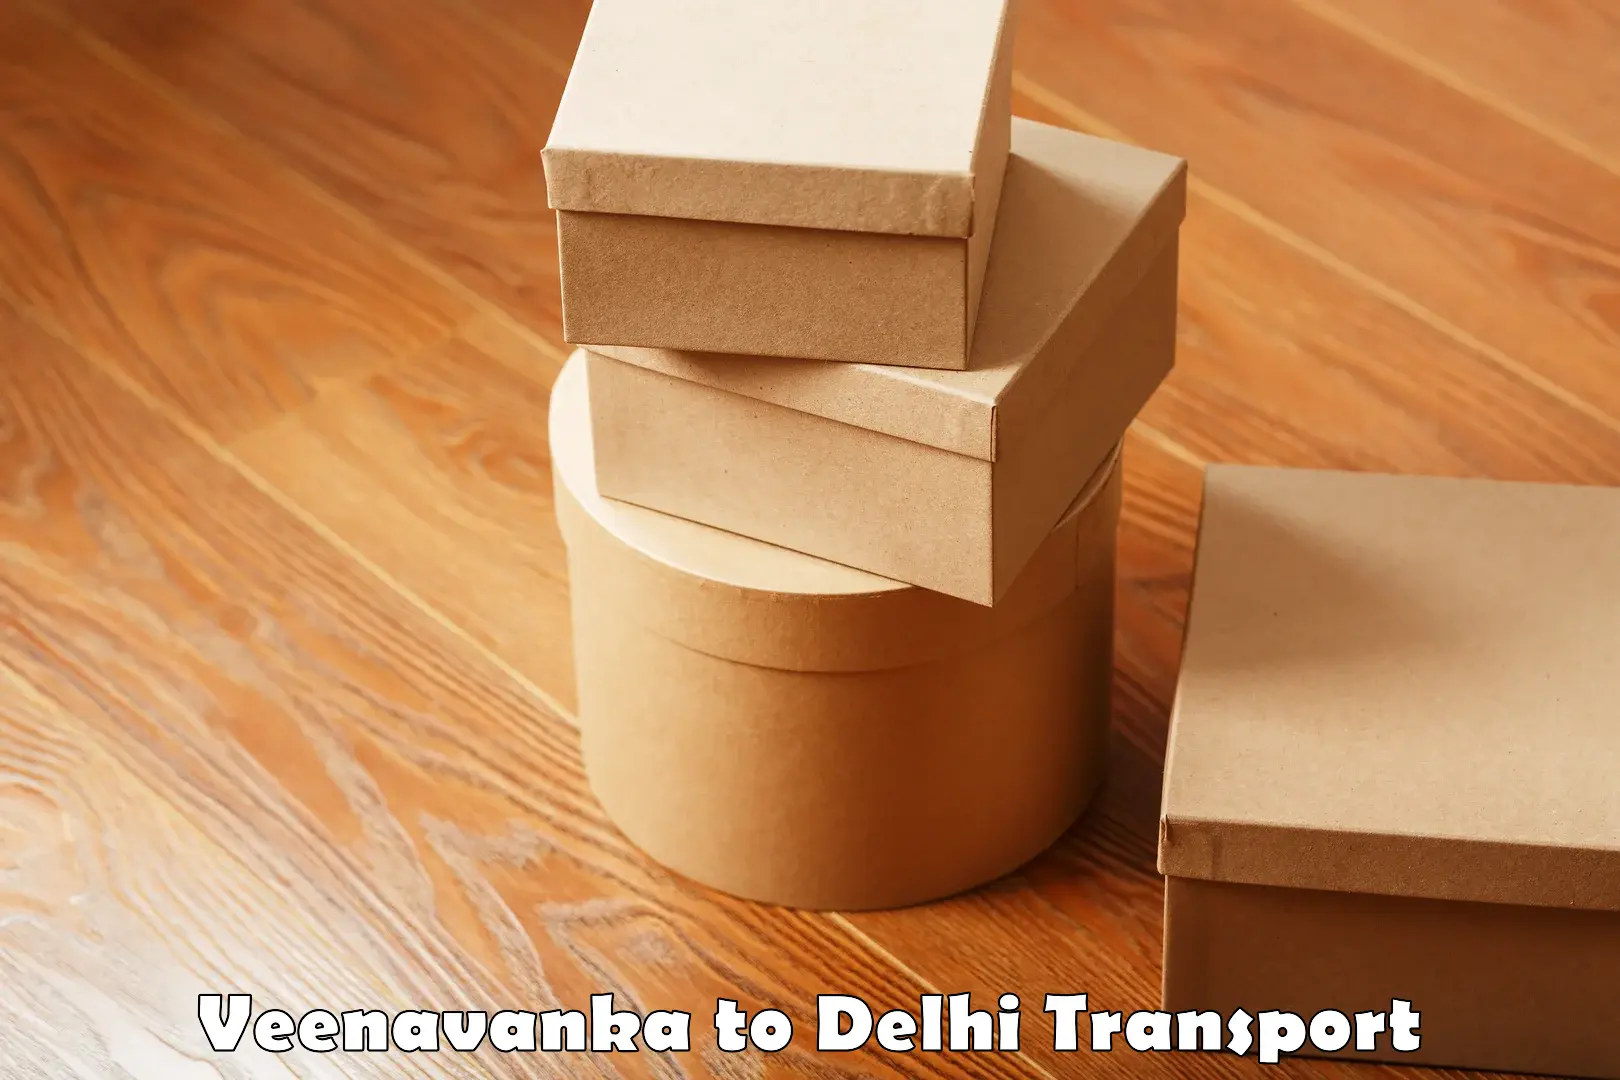 Daily transport service Veenavanka to Guru Gobind Singh Indraprastha University New Delhi